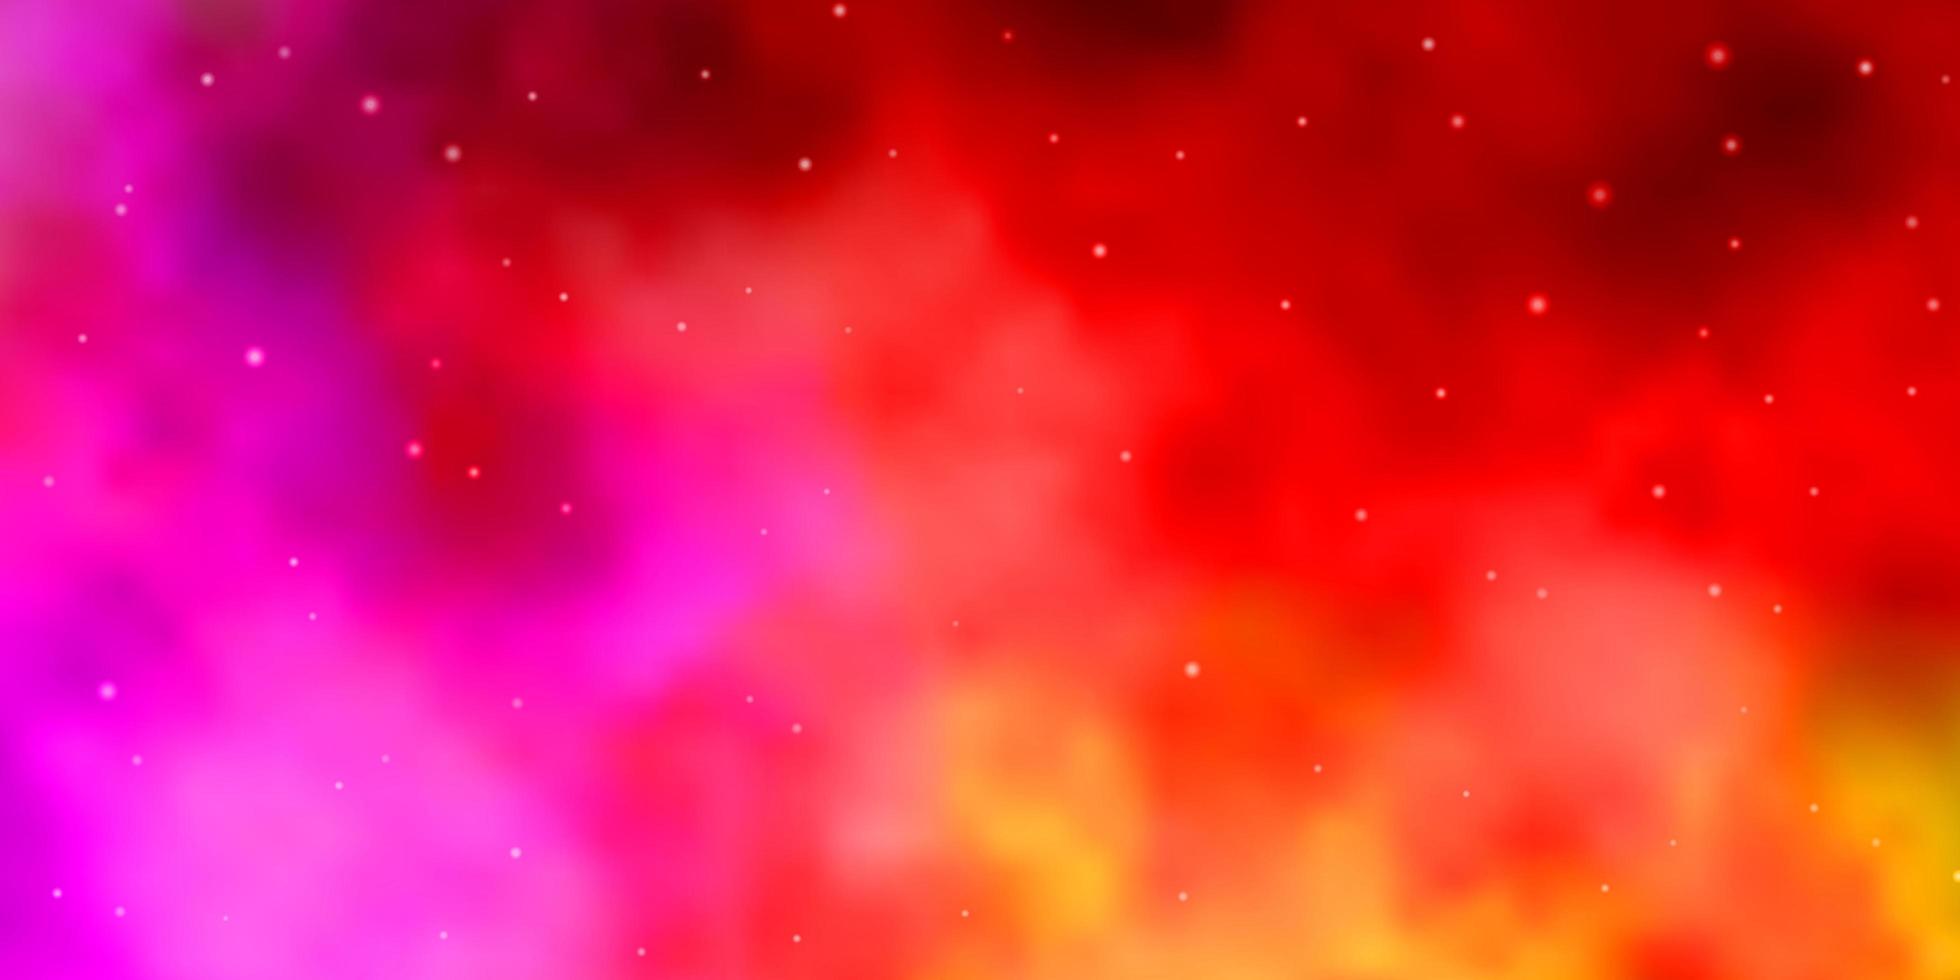 patrón de vector rosa claro, amarillo con estrellas abstractas.